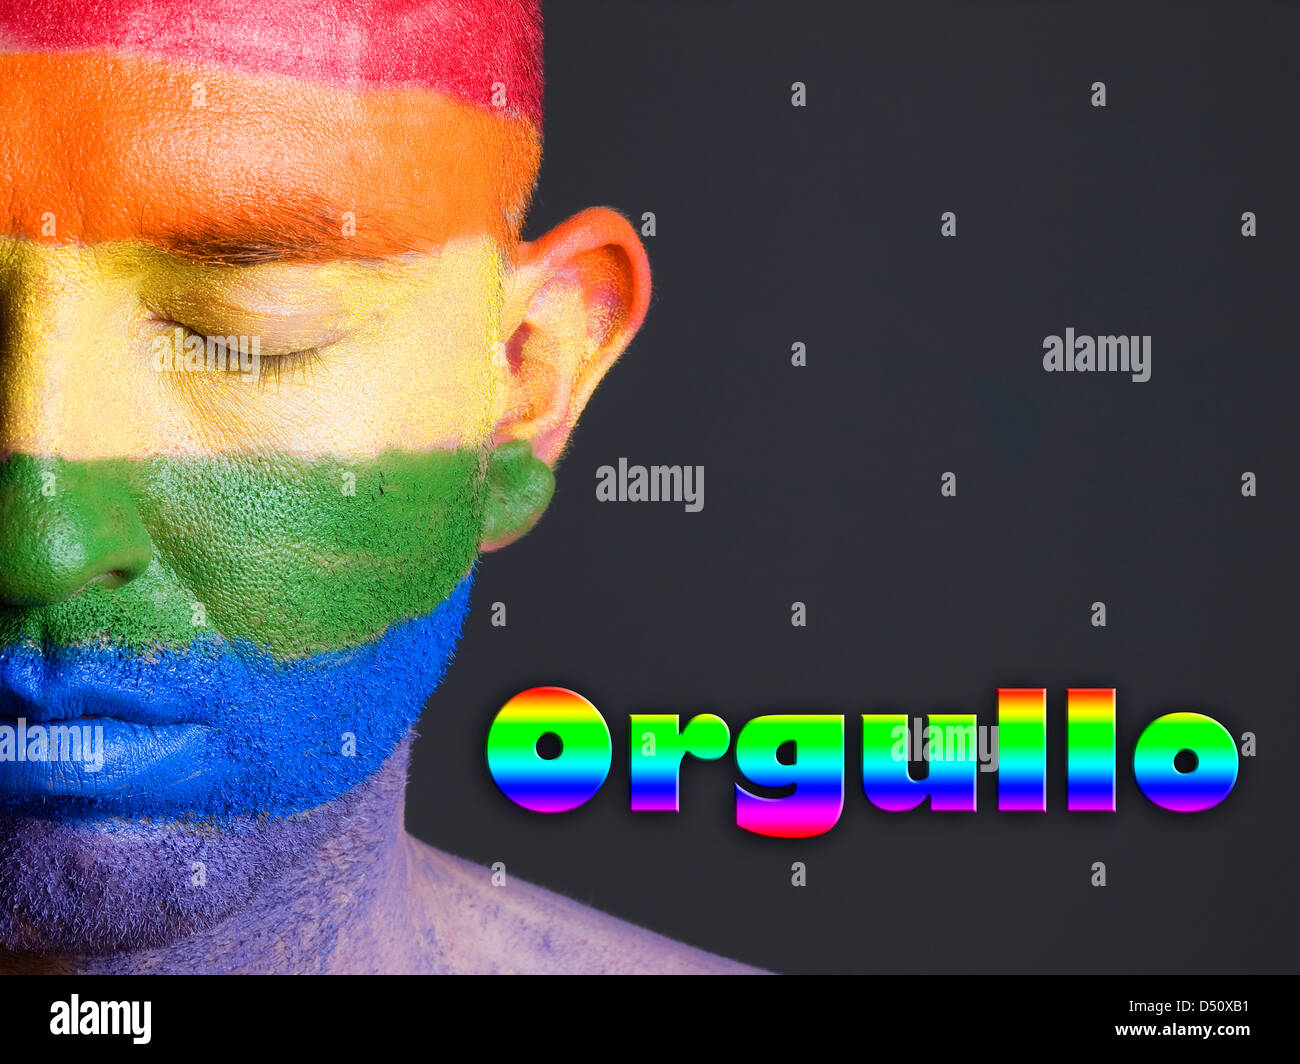 Hombre con la bandera gay pintada en la cara y con los ojos cerrados. La palabra orgullo esta escrita en un lado. Foto de stock